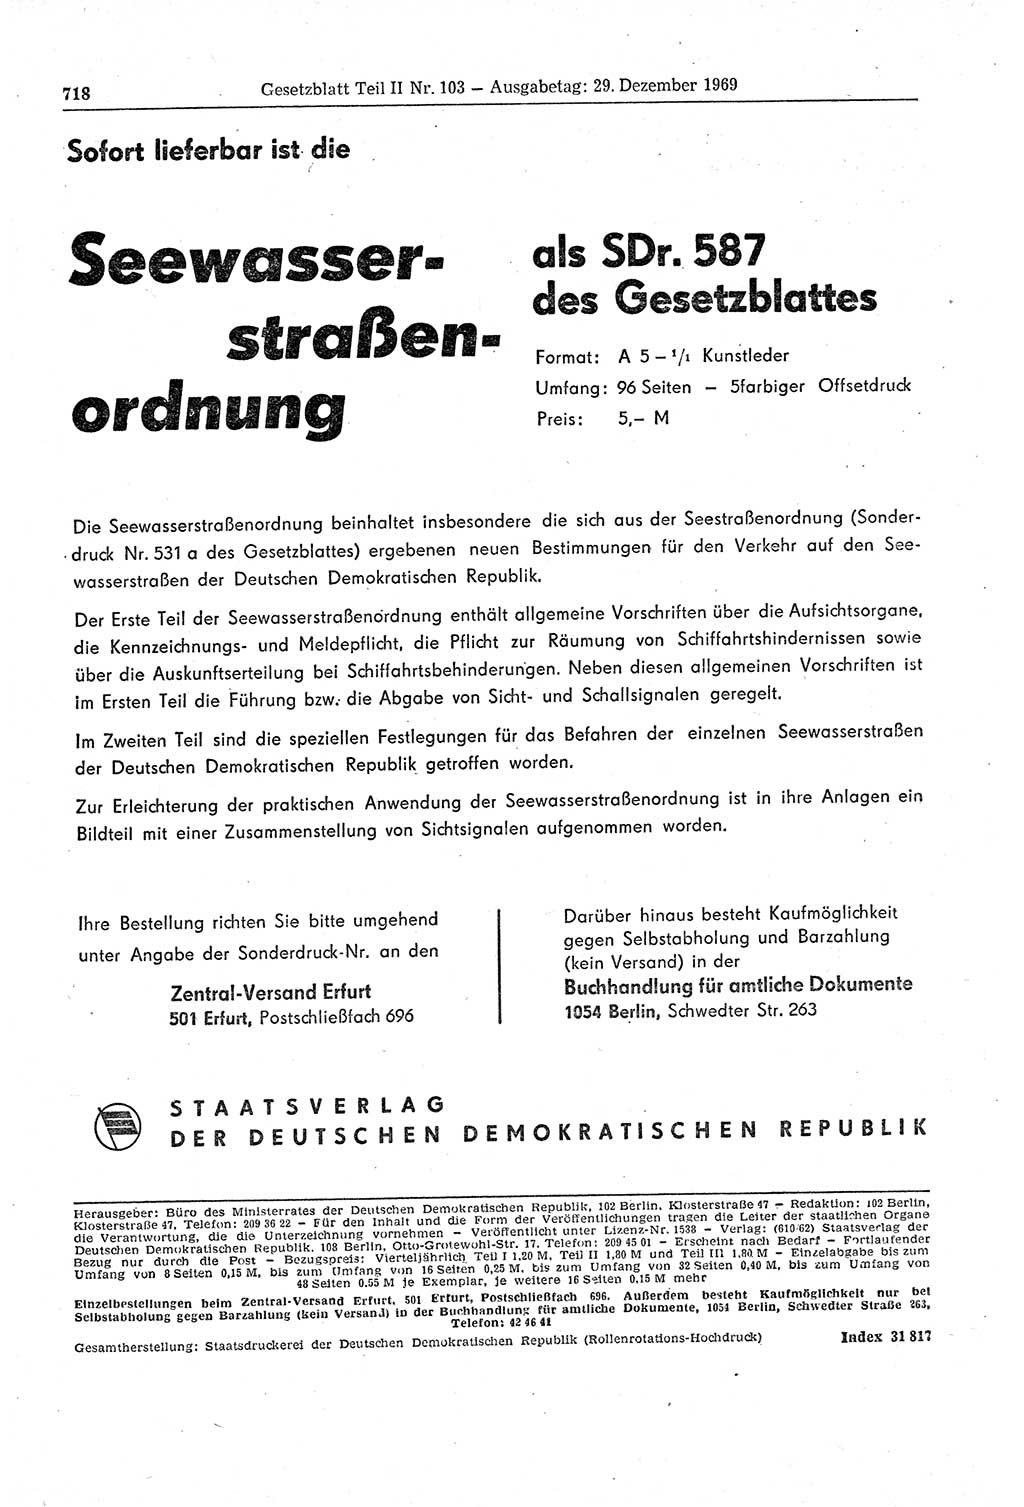 Gesetzblatt (GBl.) der Deutschen Demokratischen Republik (DDR) Teil ⅠⅠ 1969, Seite 718 (GBl. DDR ⅠⅠ 1969, S. 718)